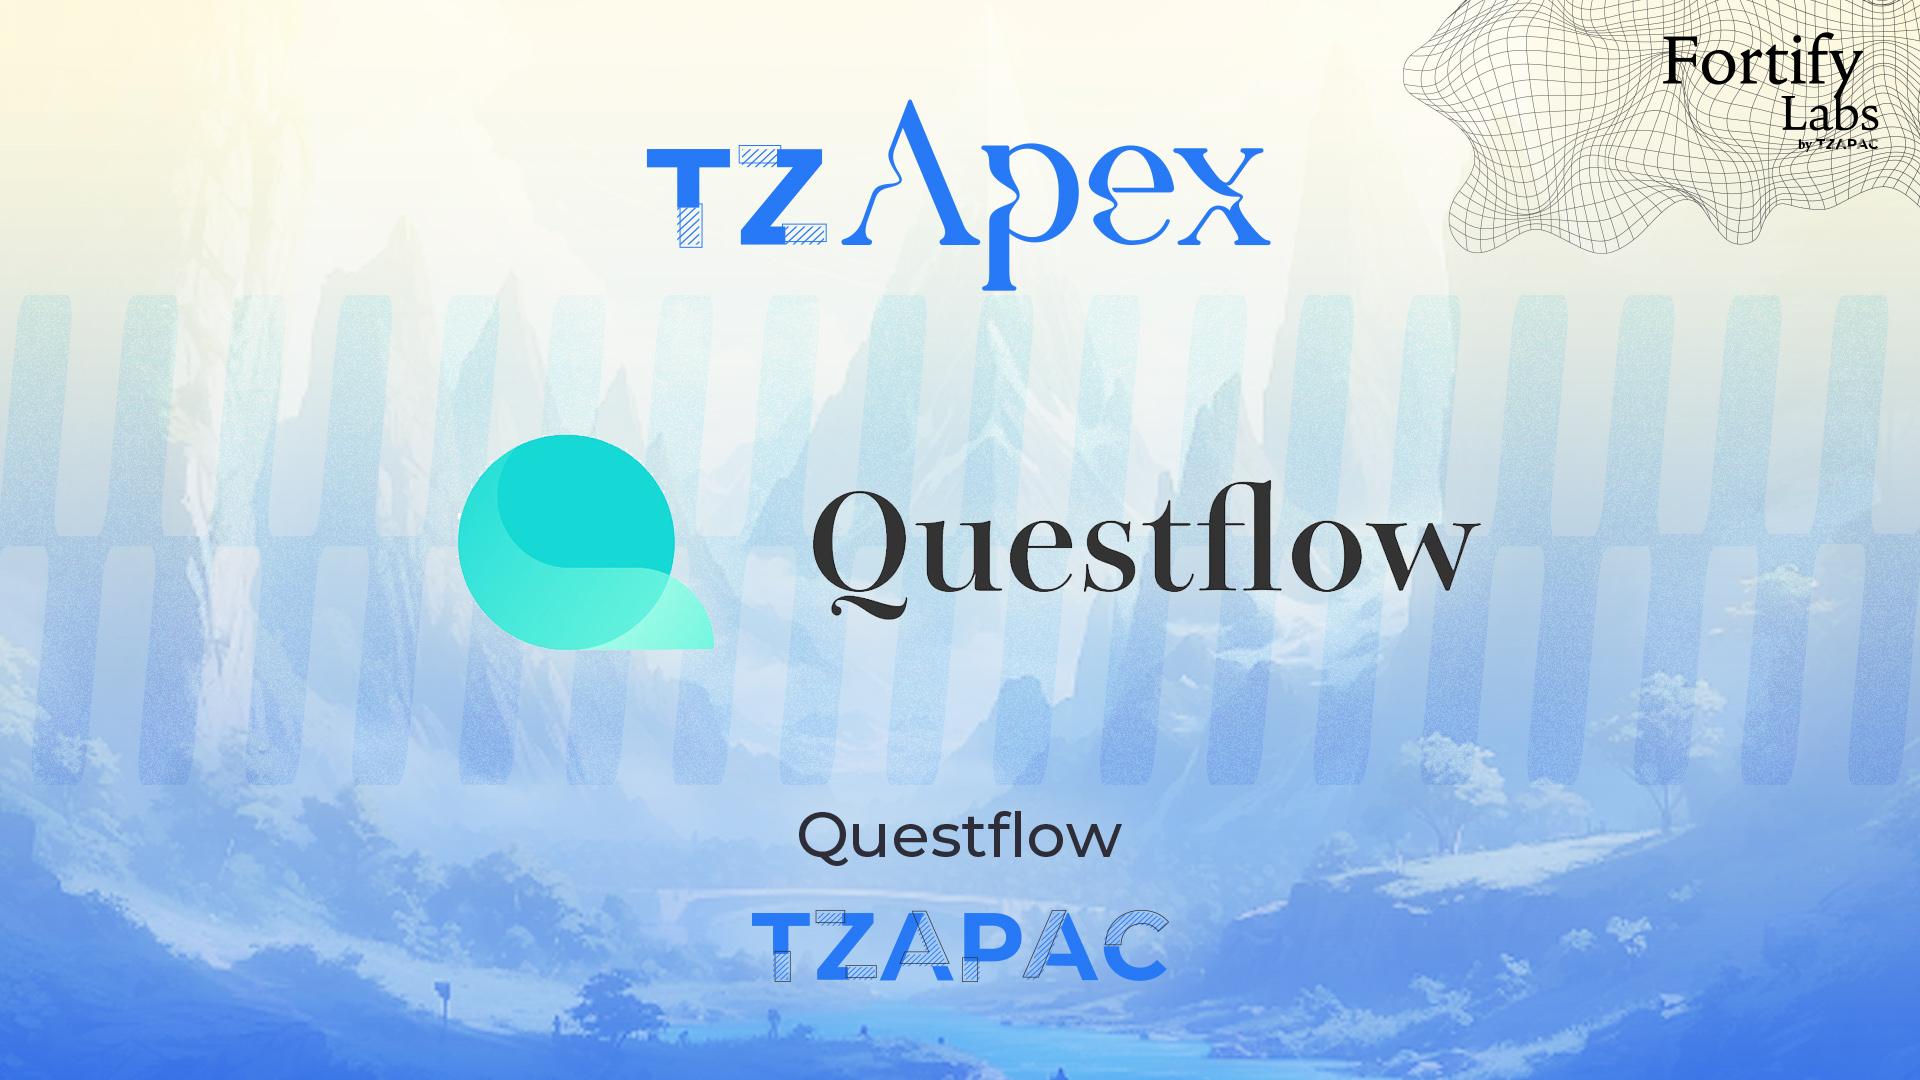 Questflow